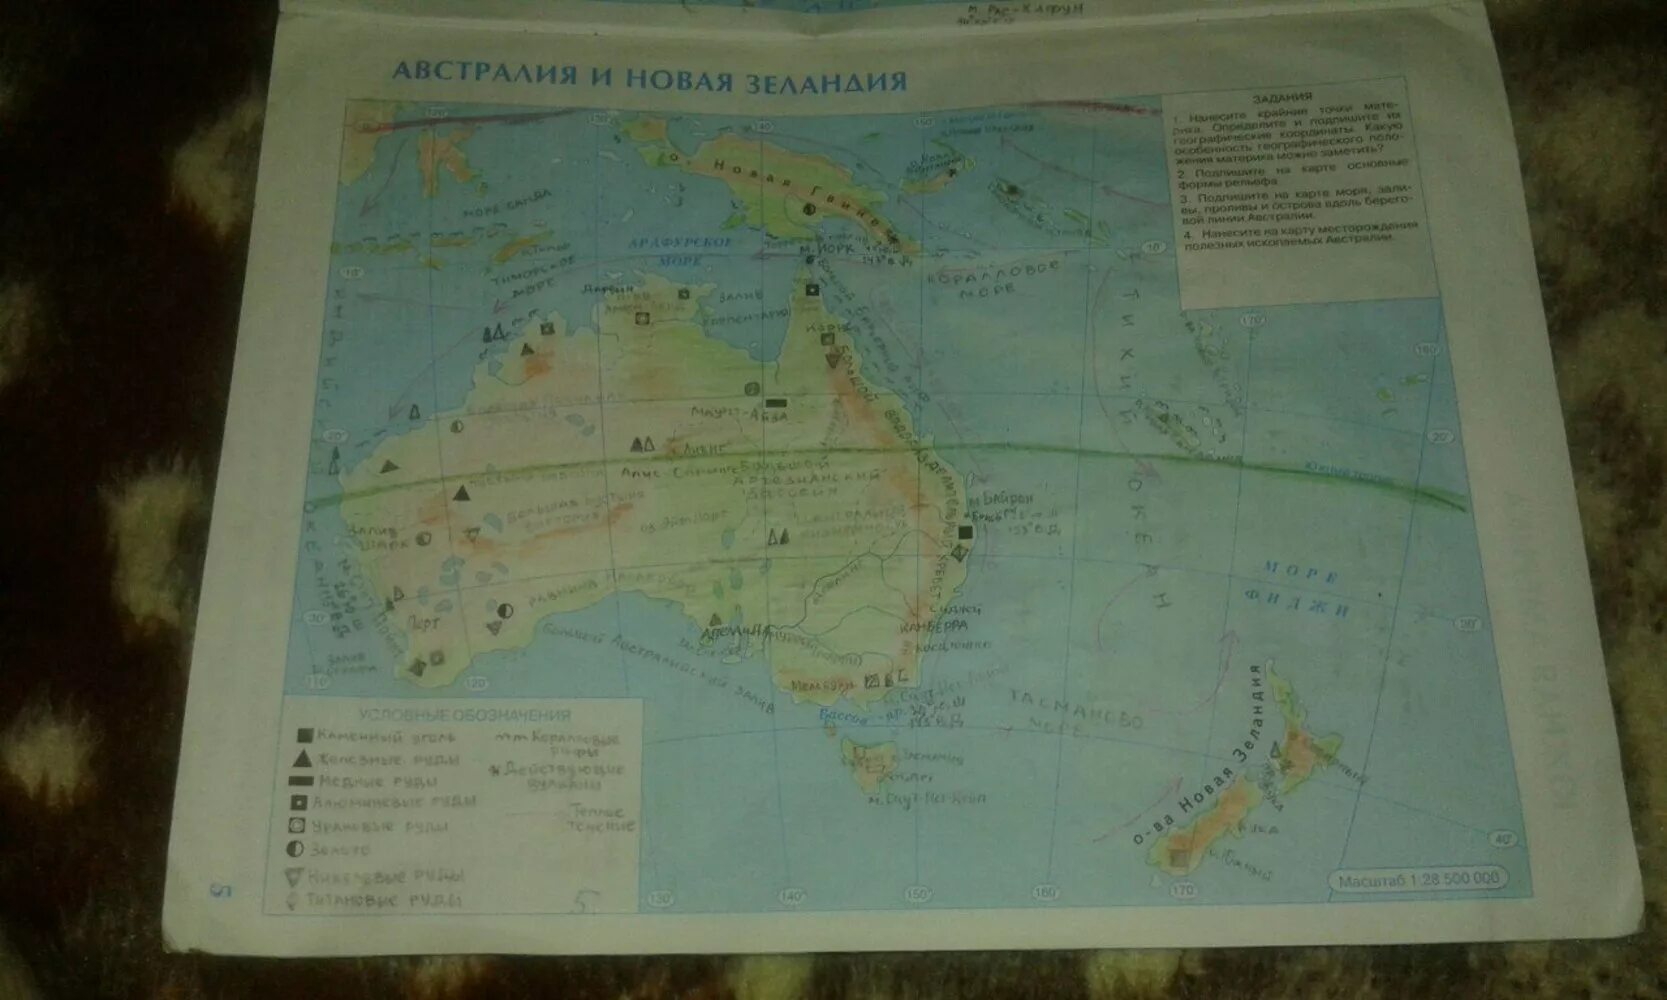 География 7 класс контурные карты Австралия и новая Зеландия. Гдз контурная карта Австралии новая Зеландия седьмой класс география. Контурная карта Австралии и новой Зеландии 7 класс номенклатура. Гдз по контурной карте по географии 7 класс Австралия и новая Зеландия.